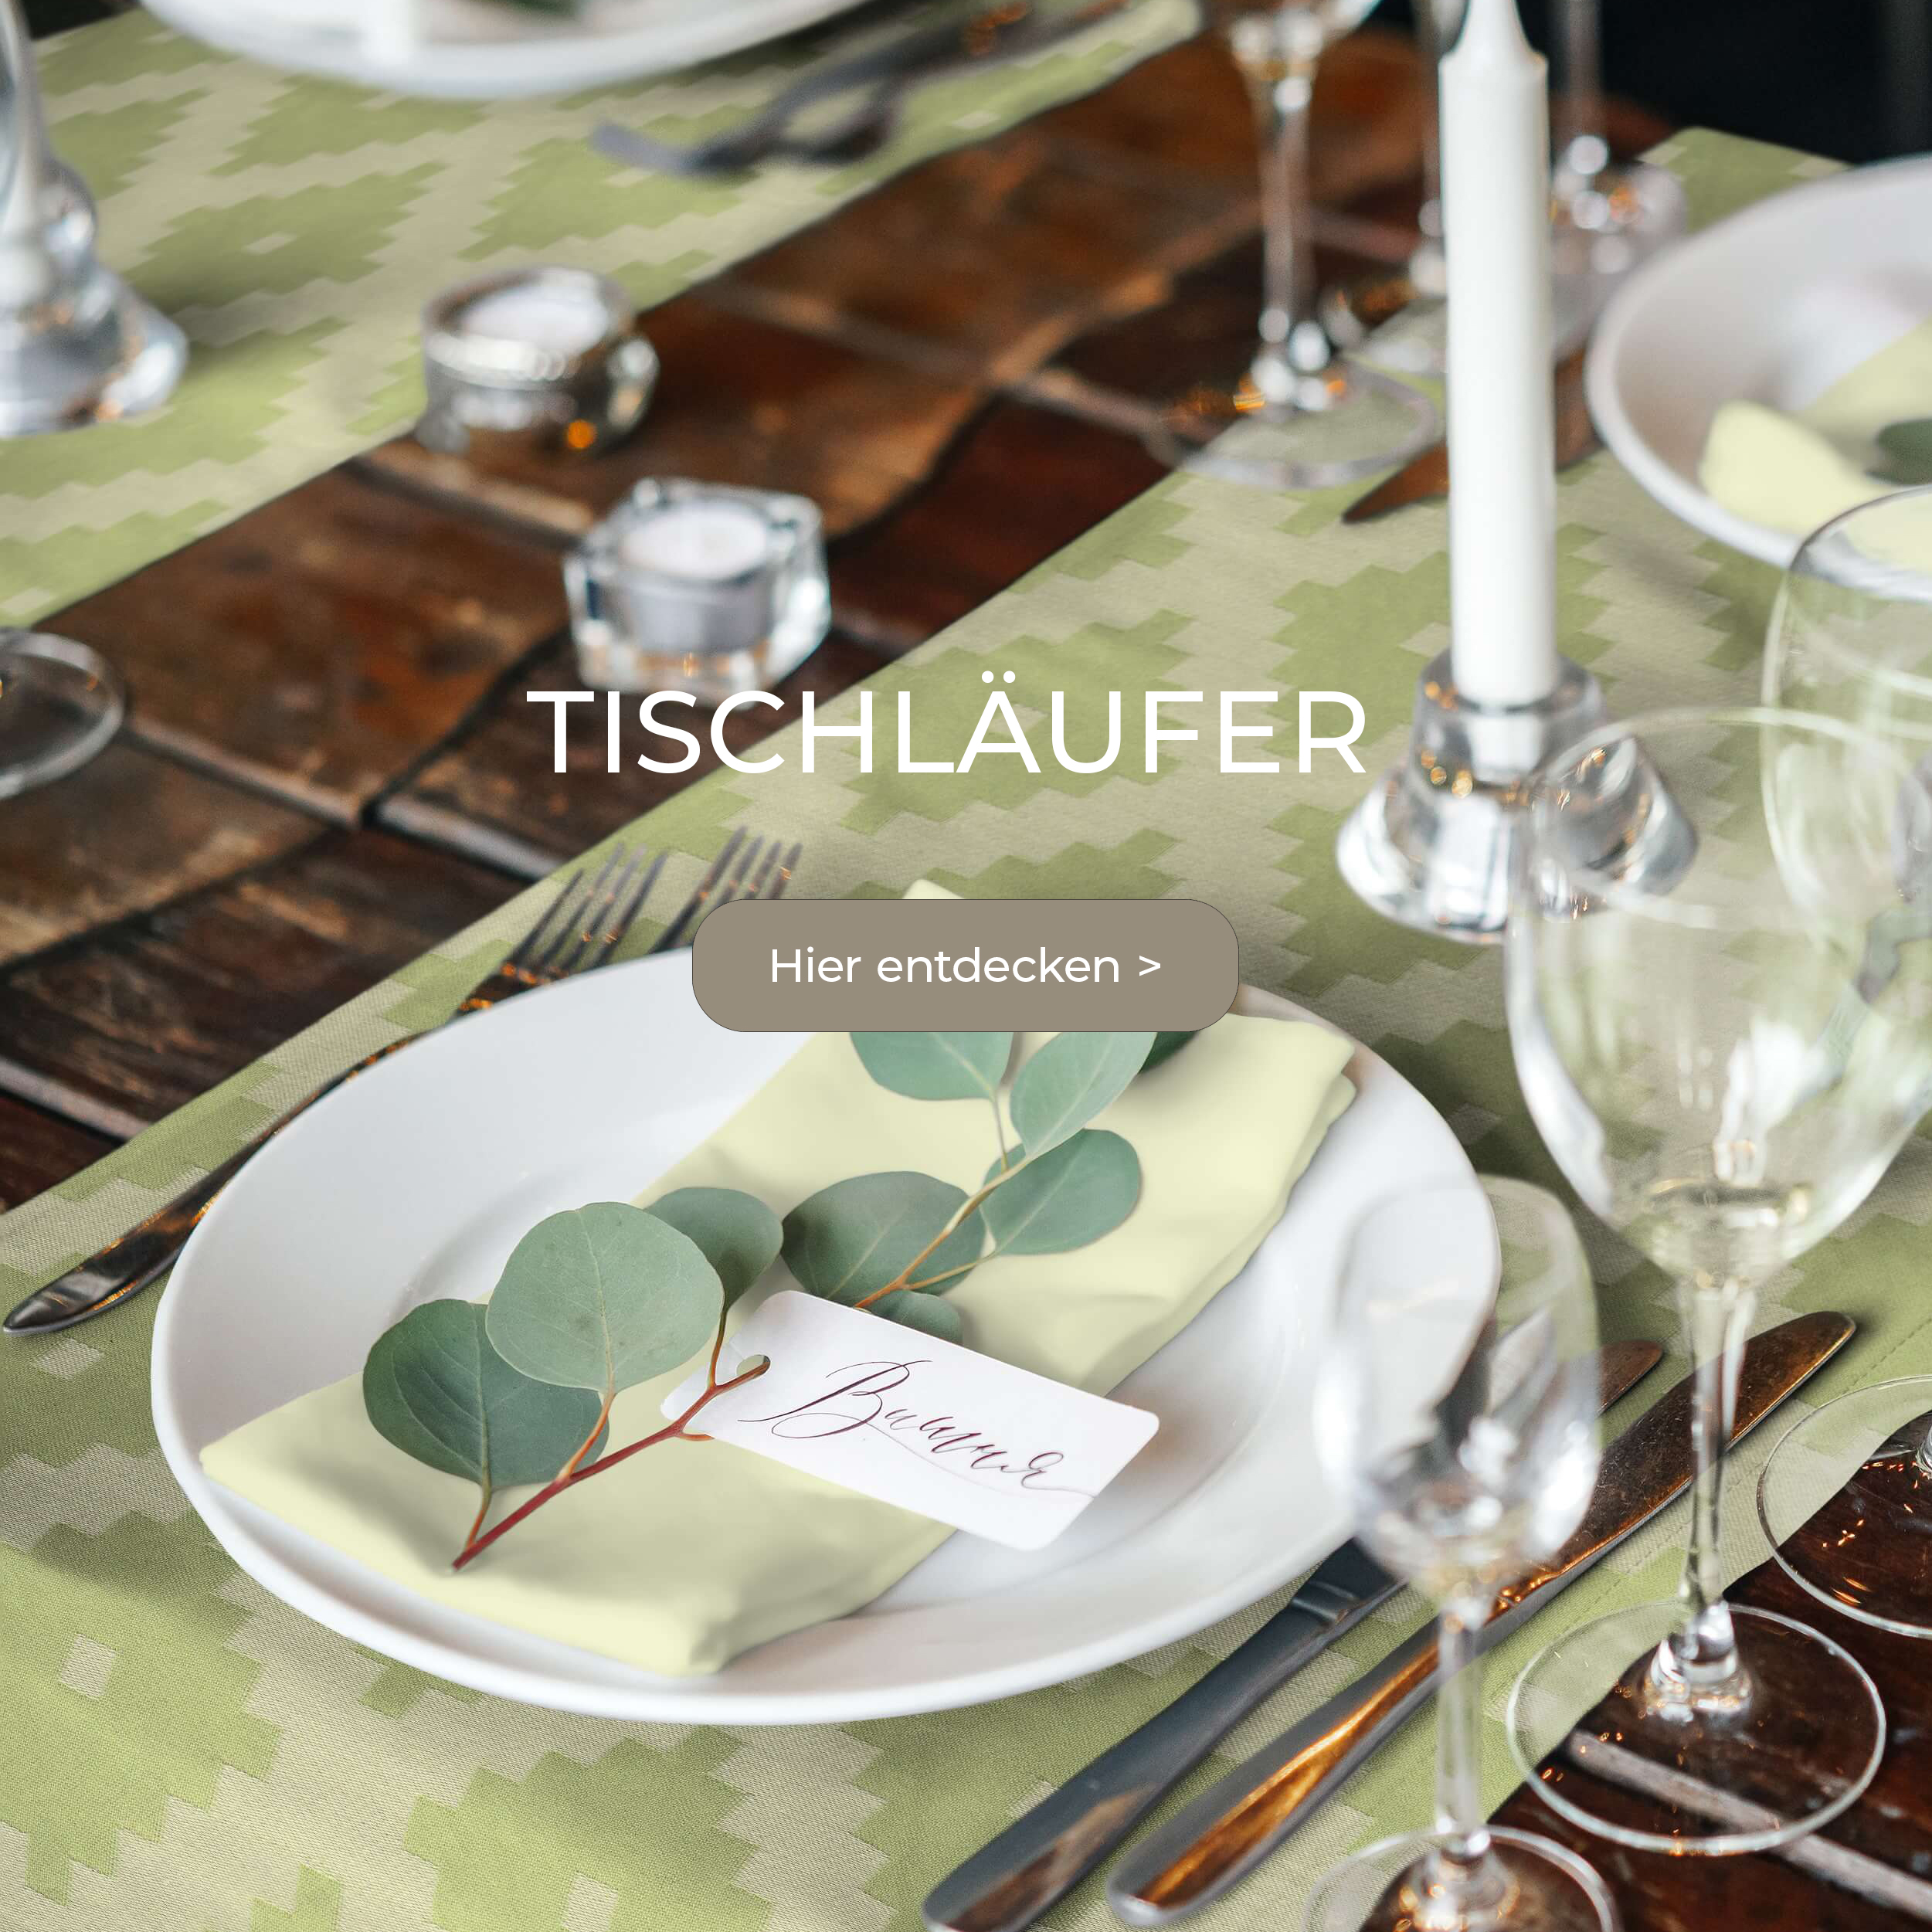 Tischläufer aus Bio-Baumwolle: Perfekter Kombipartner Tischset zu Stoffservietten und